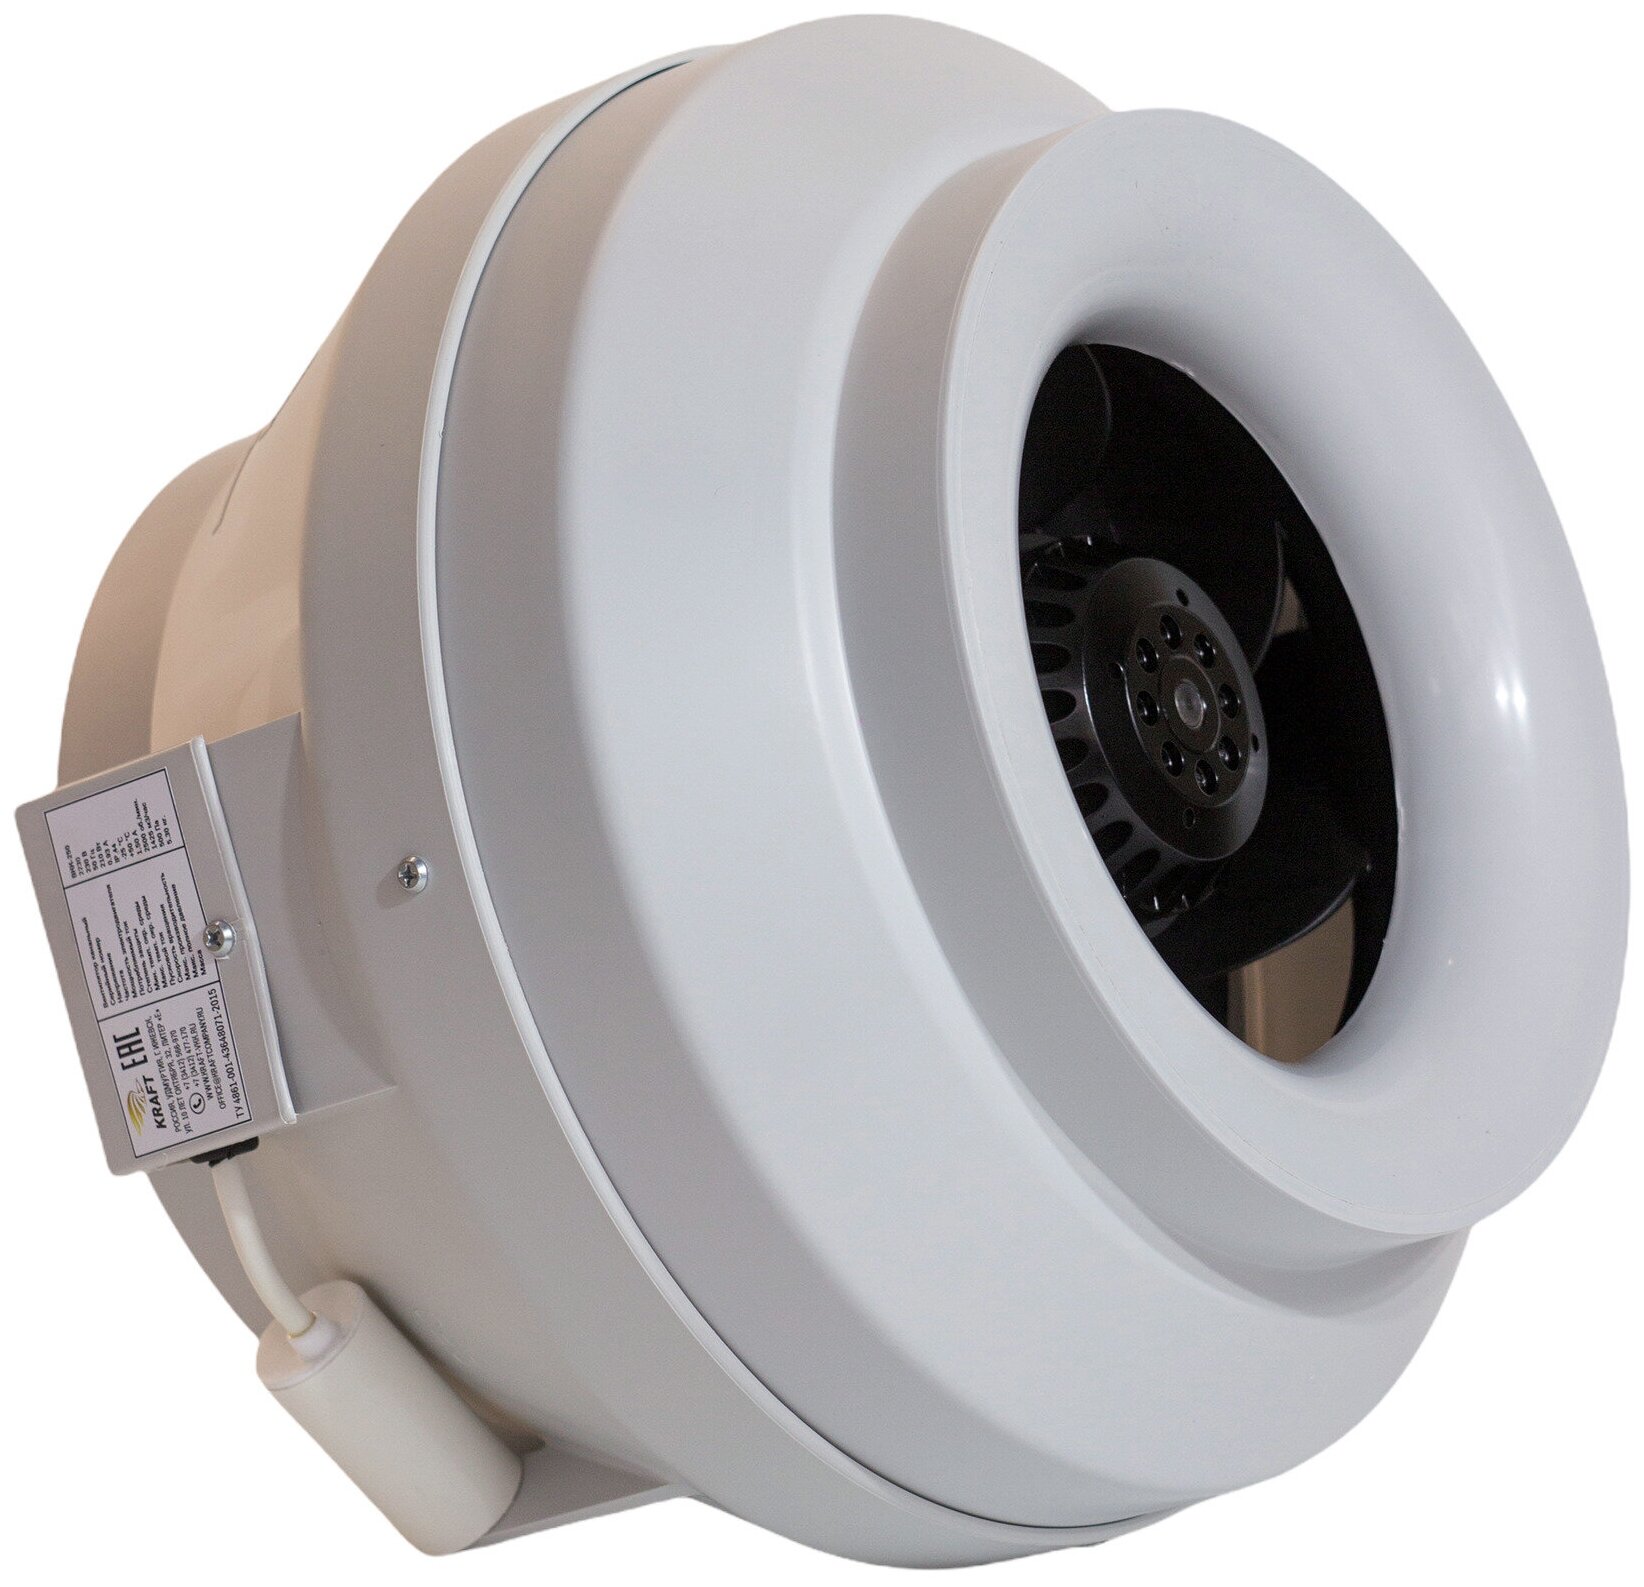 Вентилятор канальный круглый ВКК-250 V, 220В, 1420 м3/час, 500 Па, 220 Вт, IP 54, для круглых воздуховодов диаметром 250 мм, вытяжной или приточный - фотография № 2